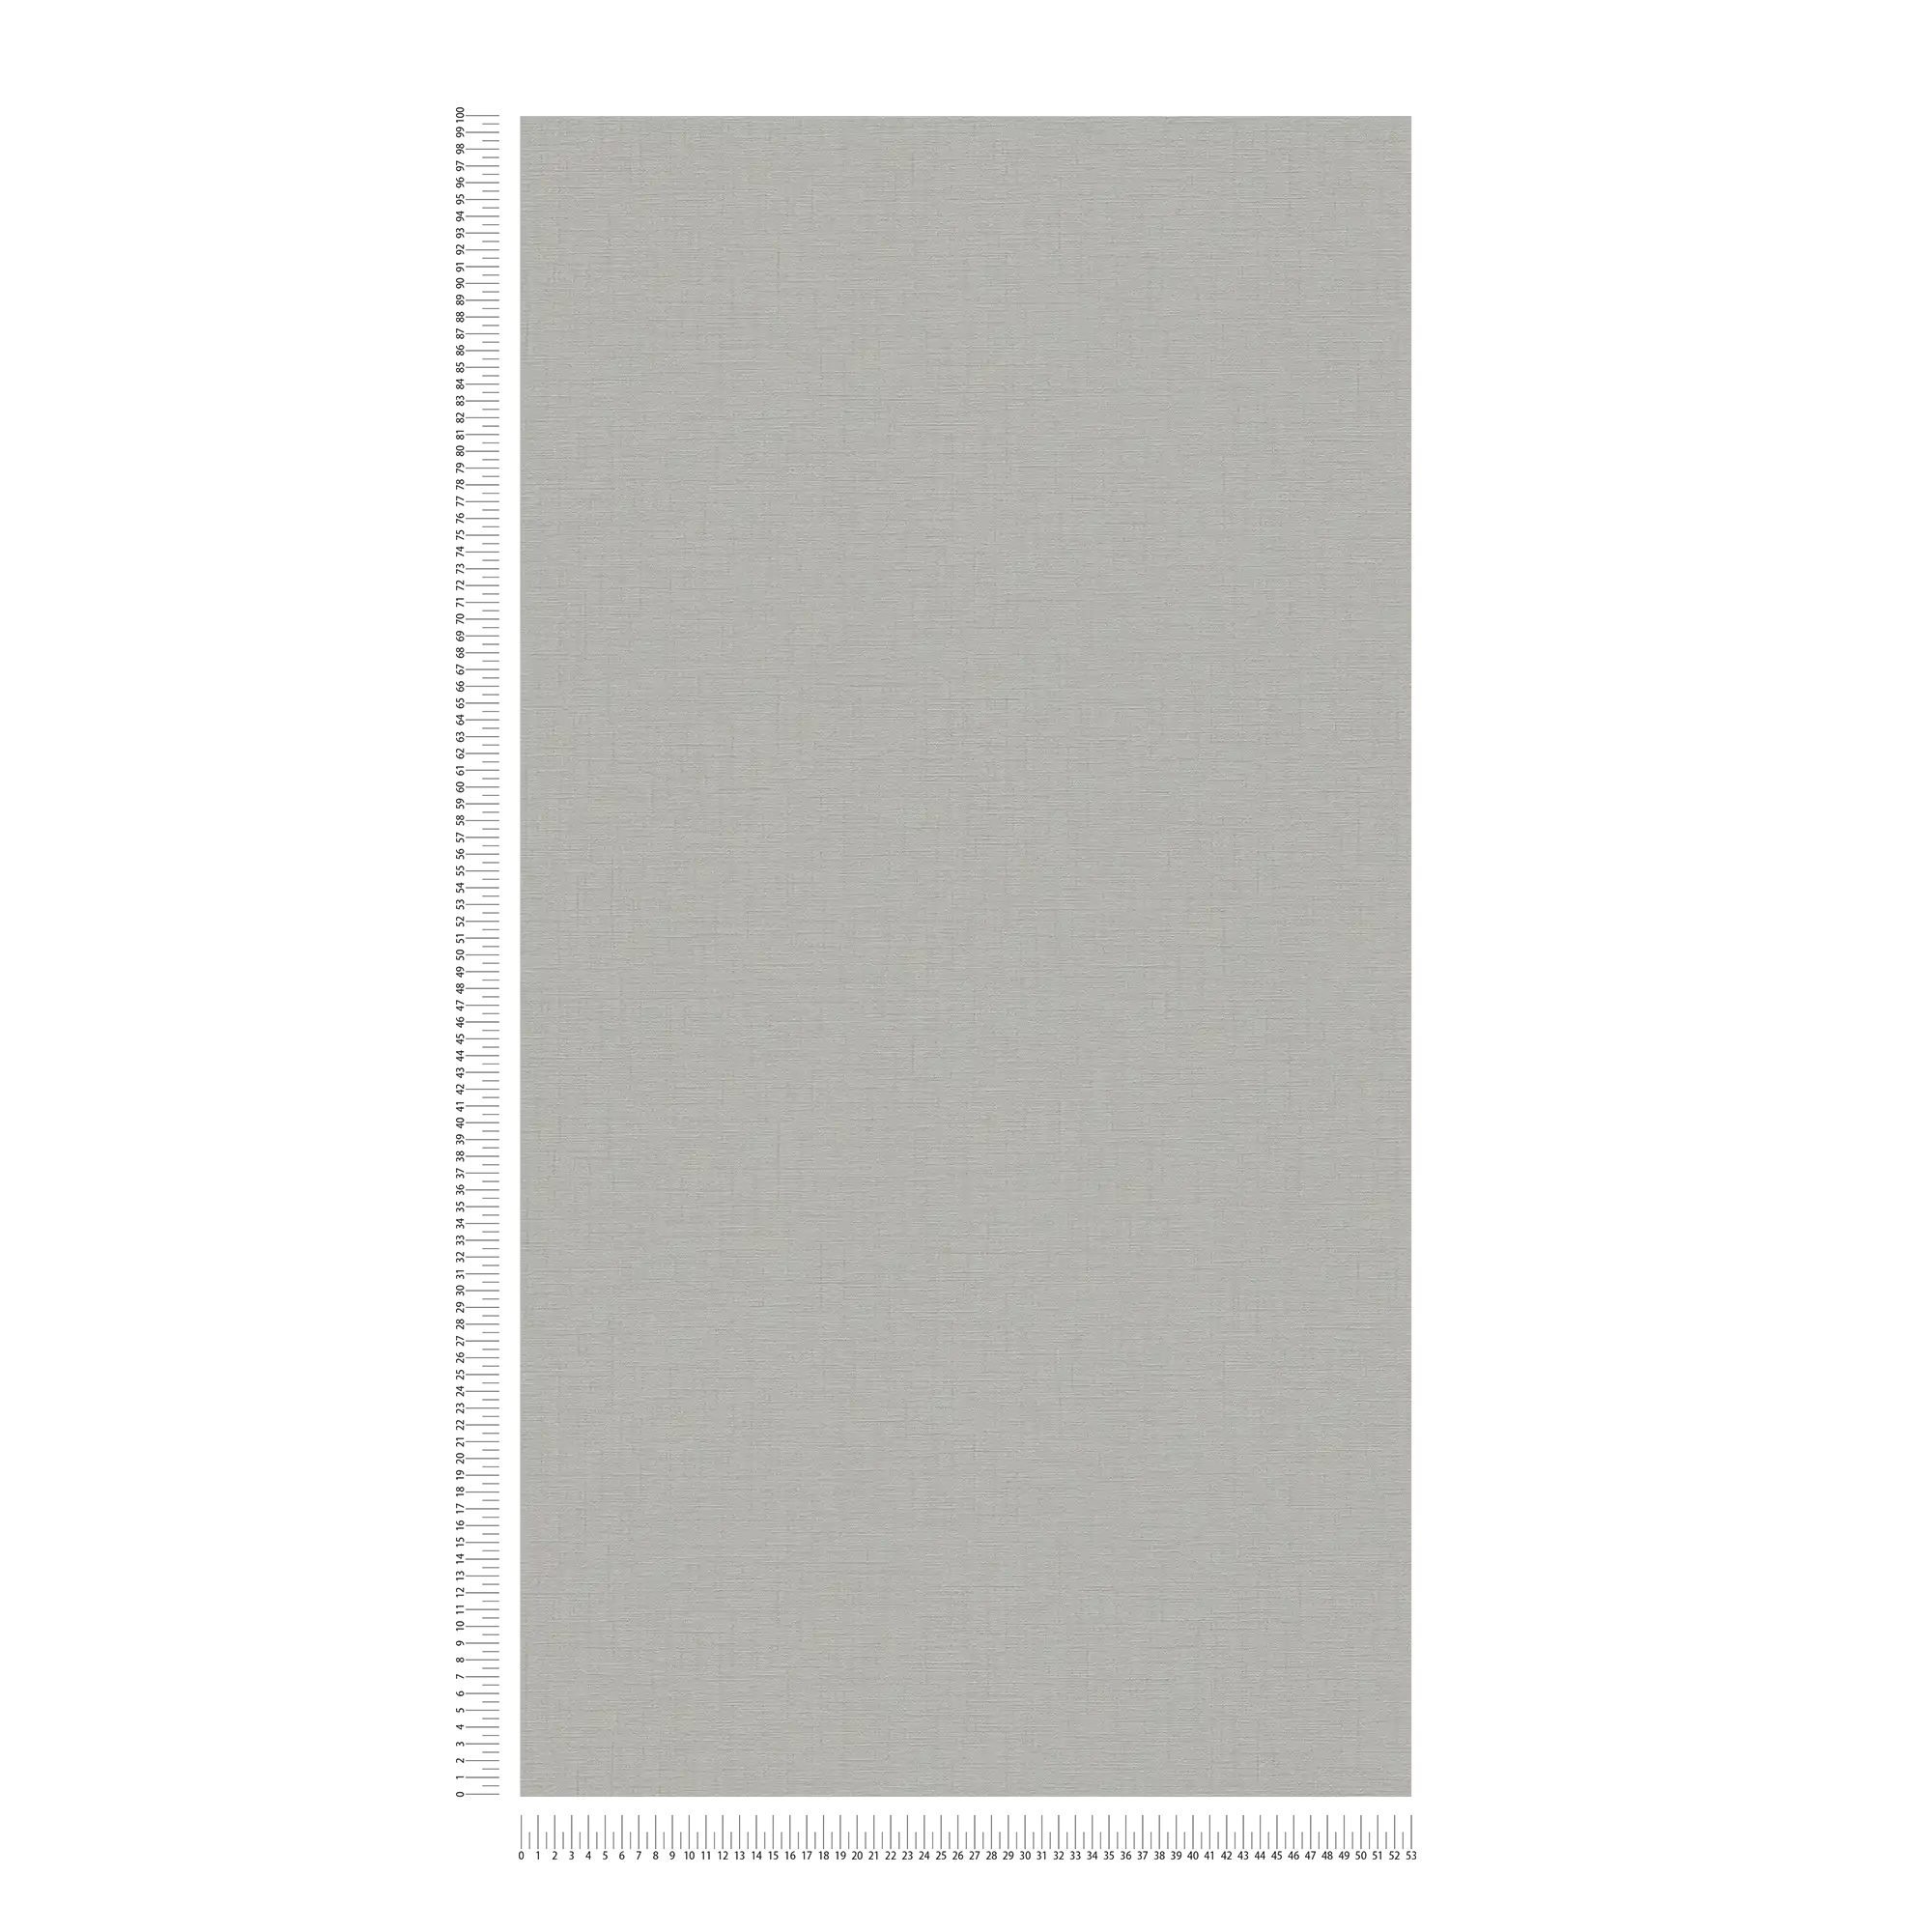             papier peint aspect lin intissé gris clair - gris
        